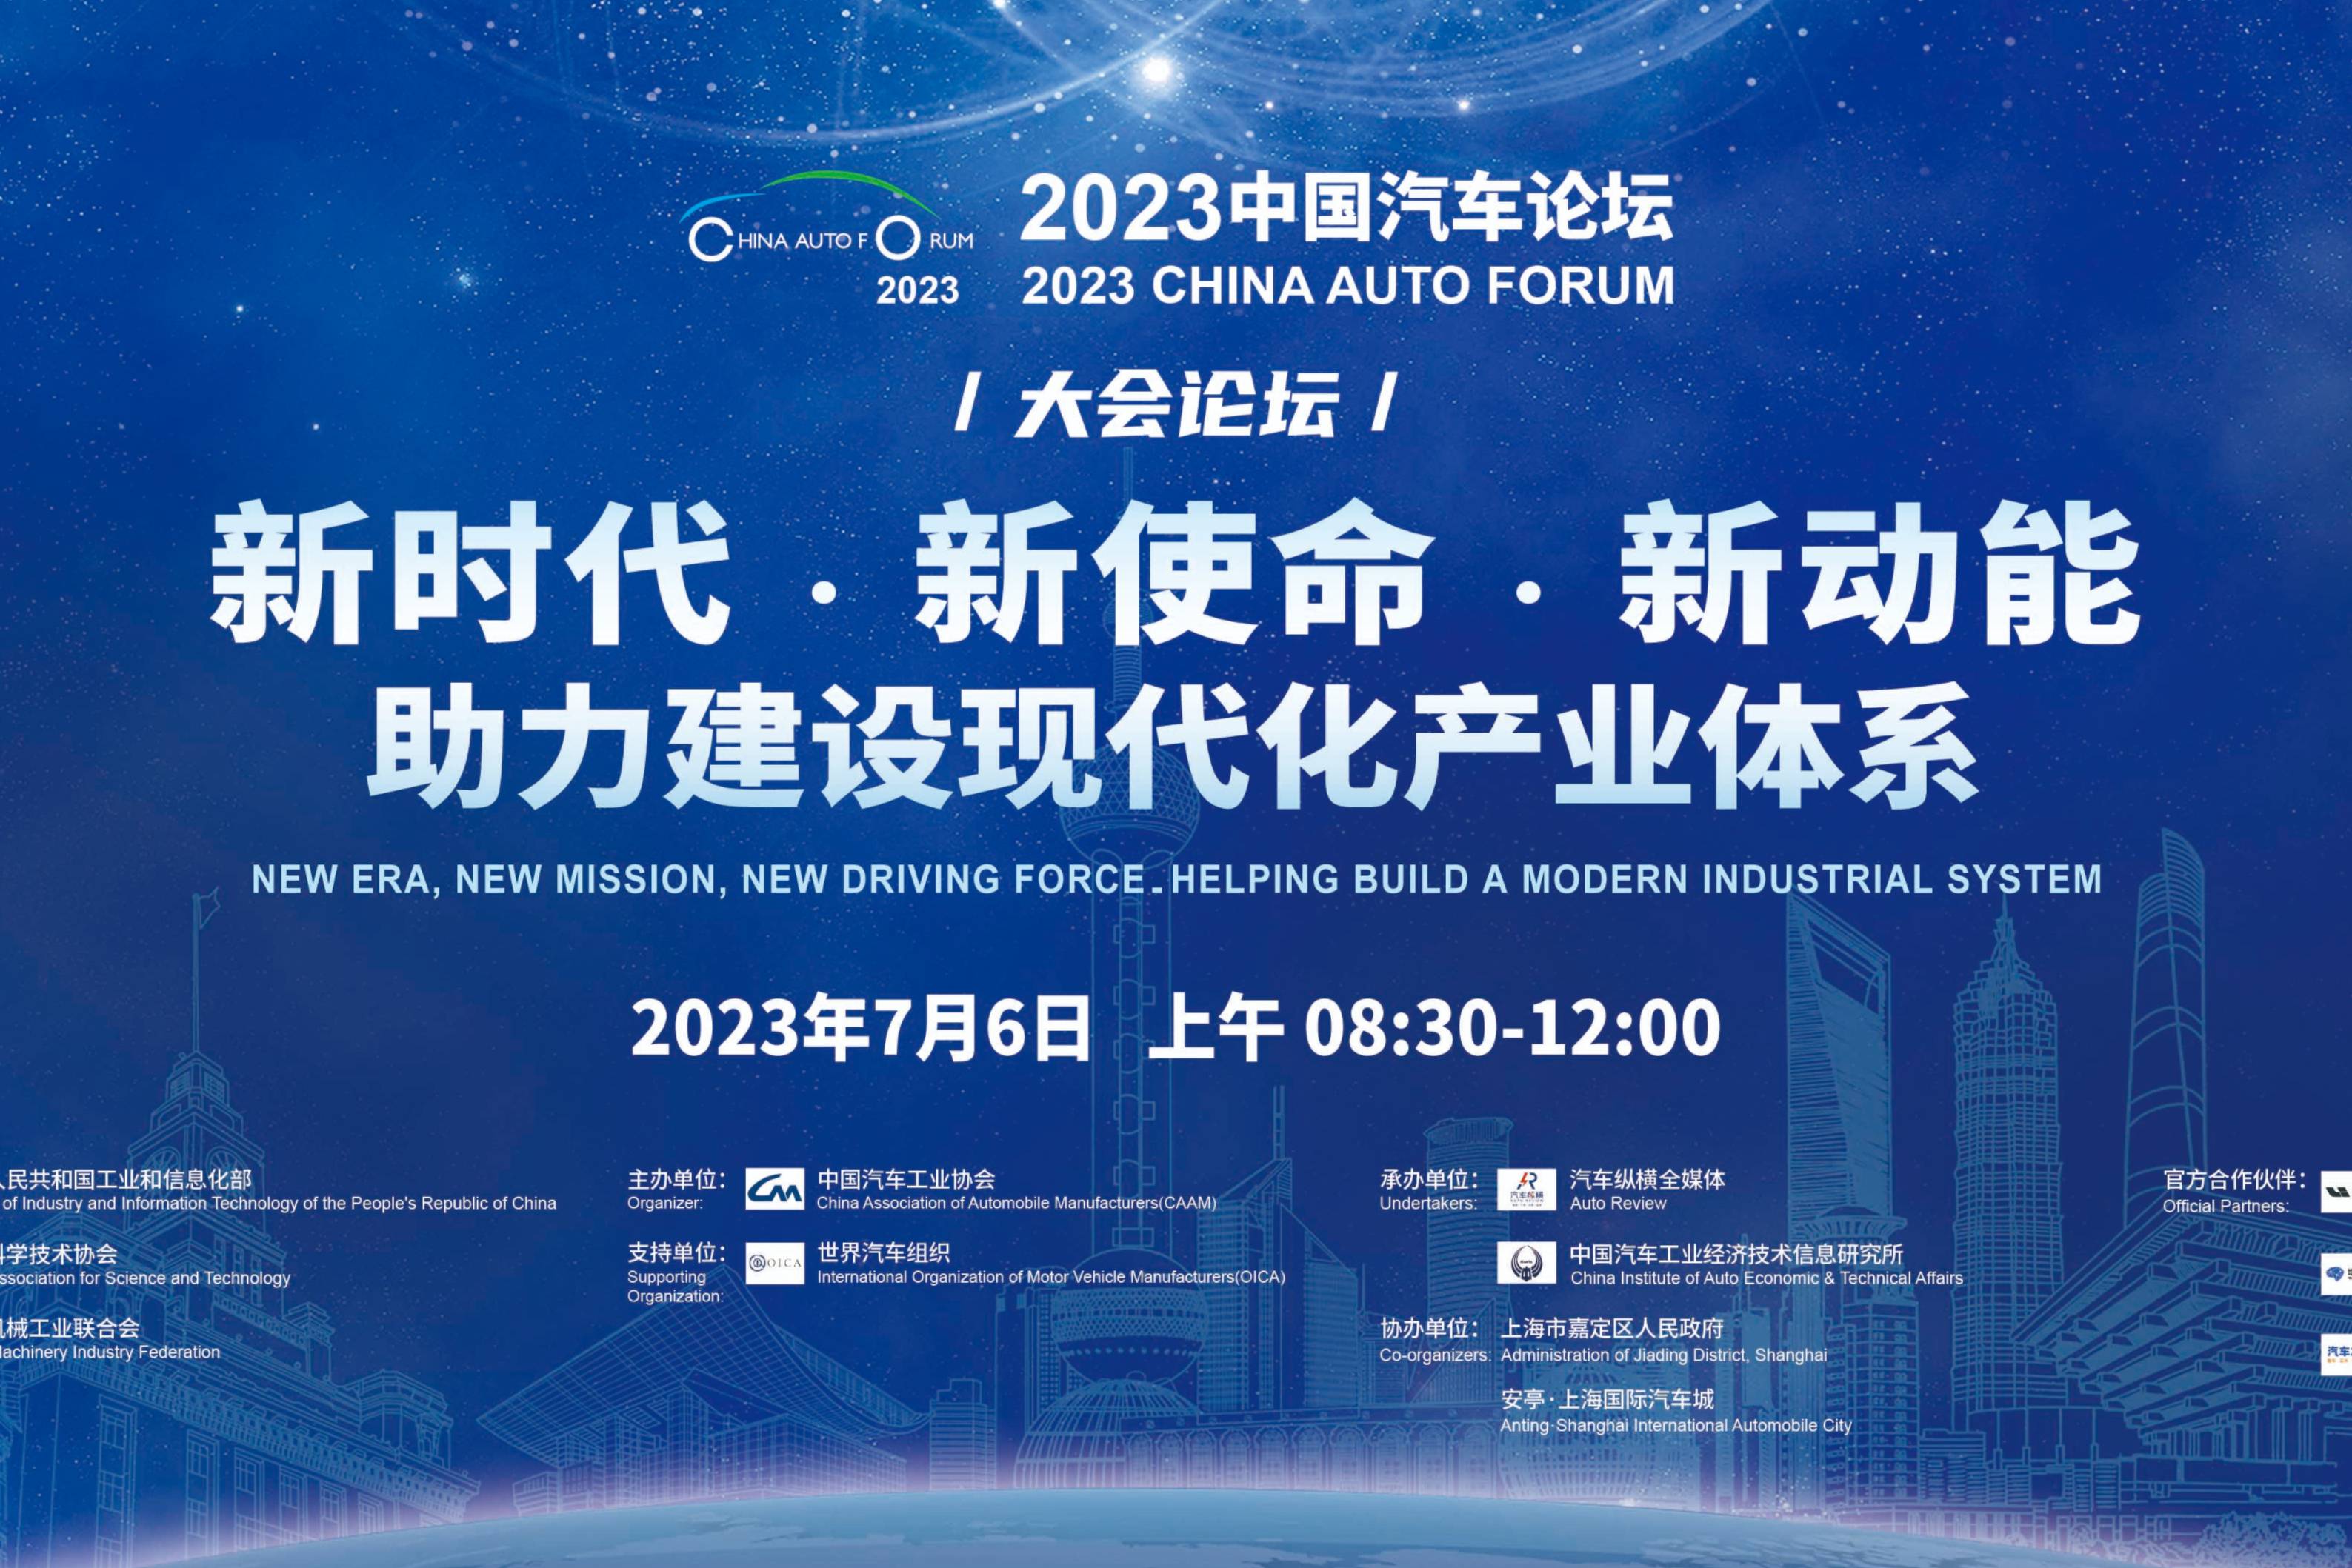 助力建设现代化产业体系！2023中国汽车论坛将在上海嘉定召开